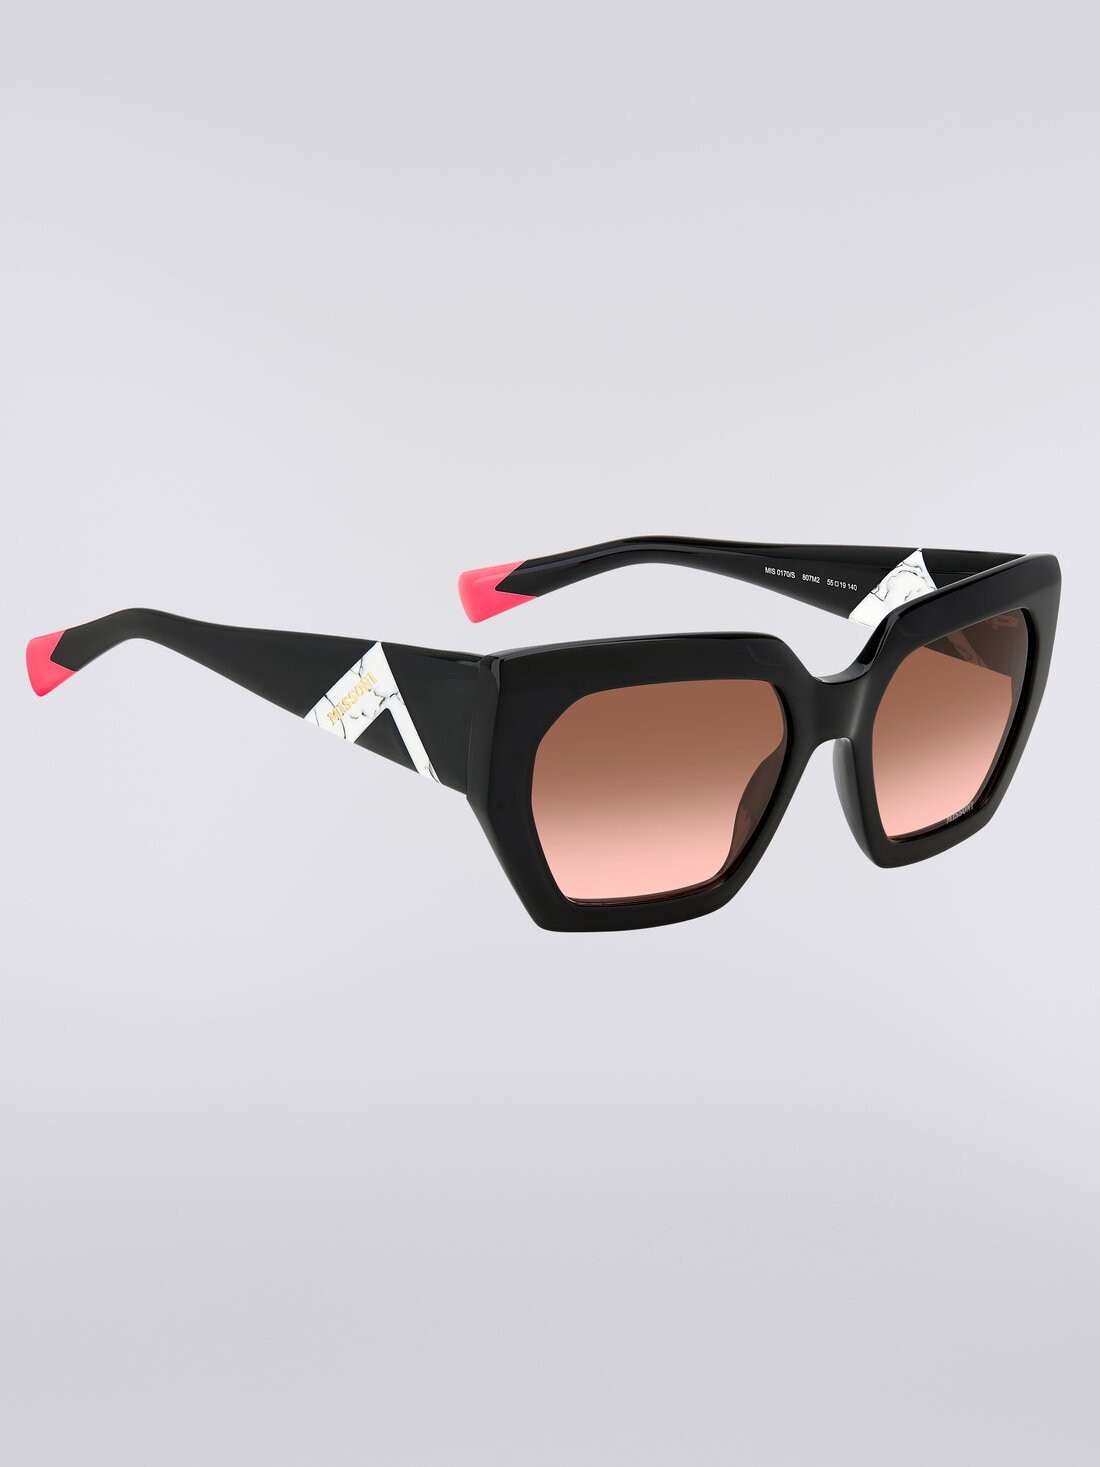 Sonnenbrille mit quadratischer Fassung, kontrastierendem Einsatz und Logo, Mehrfarbig  - 8053147194912 - 2